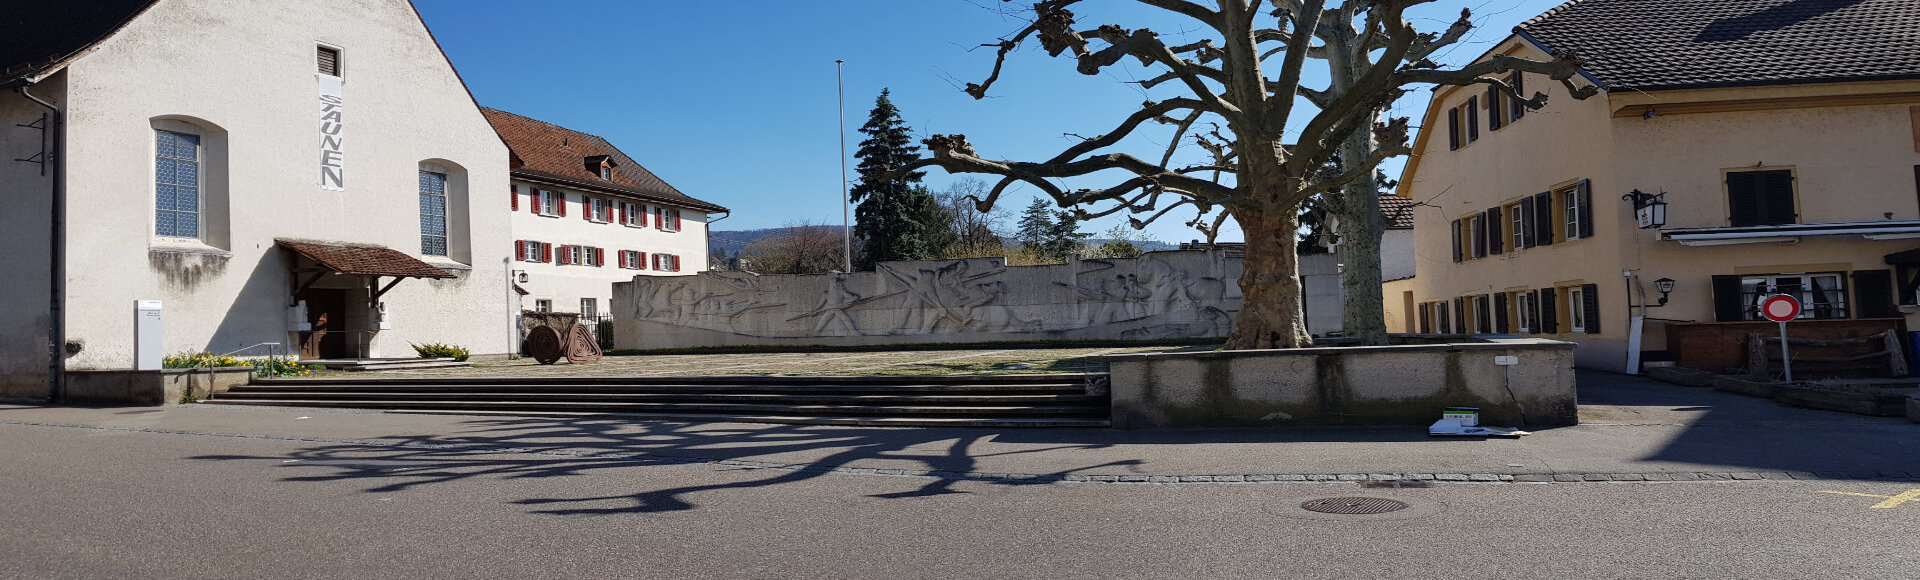 Symbolbild zeigt den Platz vor dem Kloster Dornach